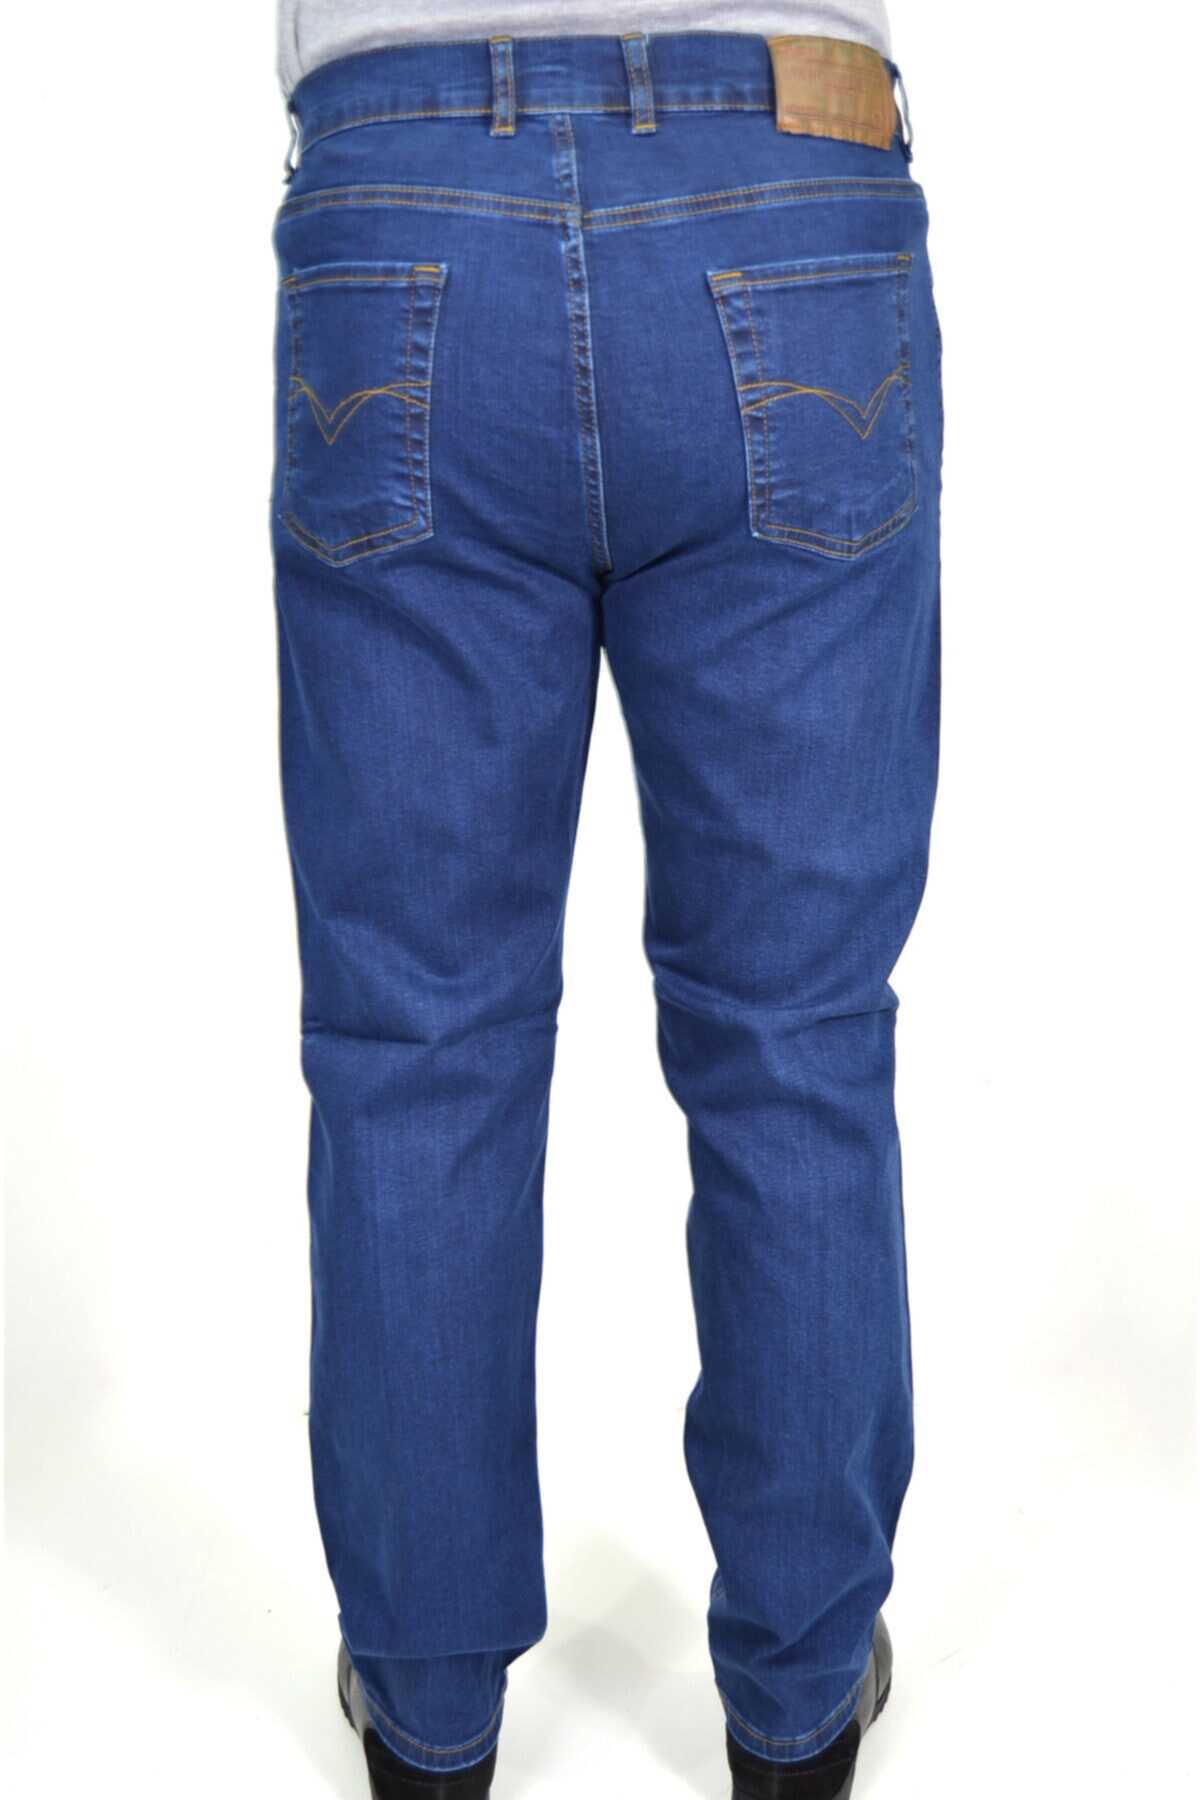 شلوار جین مردانه سایز بزرگ فاق بلند آبی تیره برند ds danlıspor